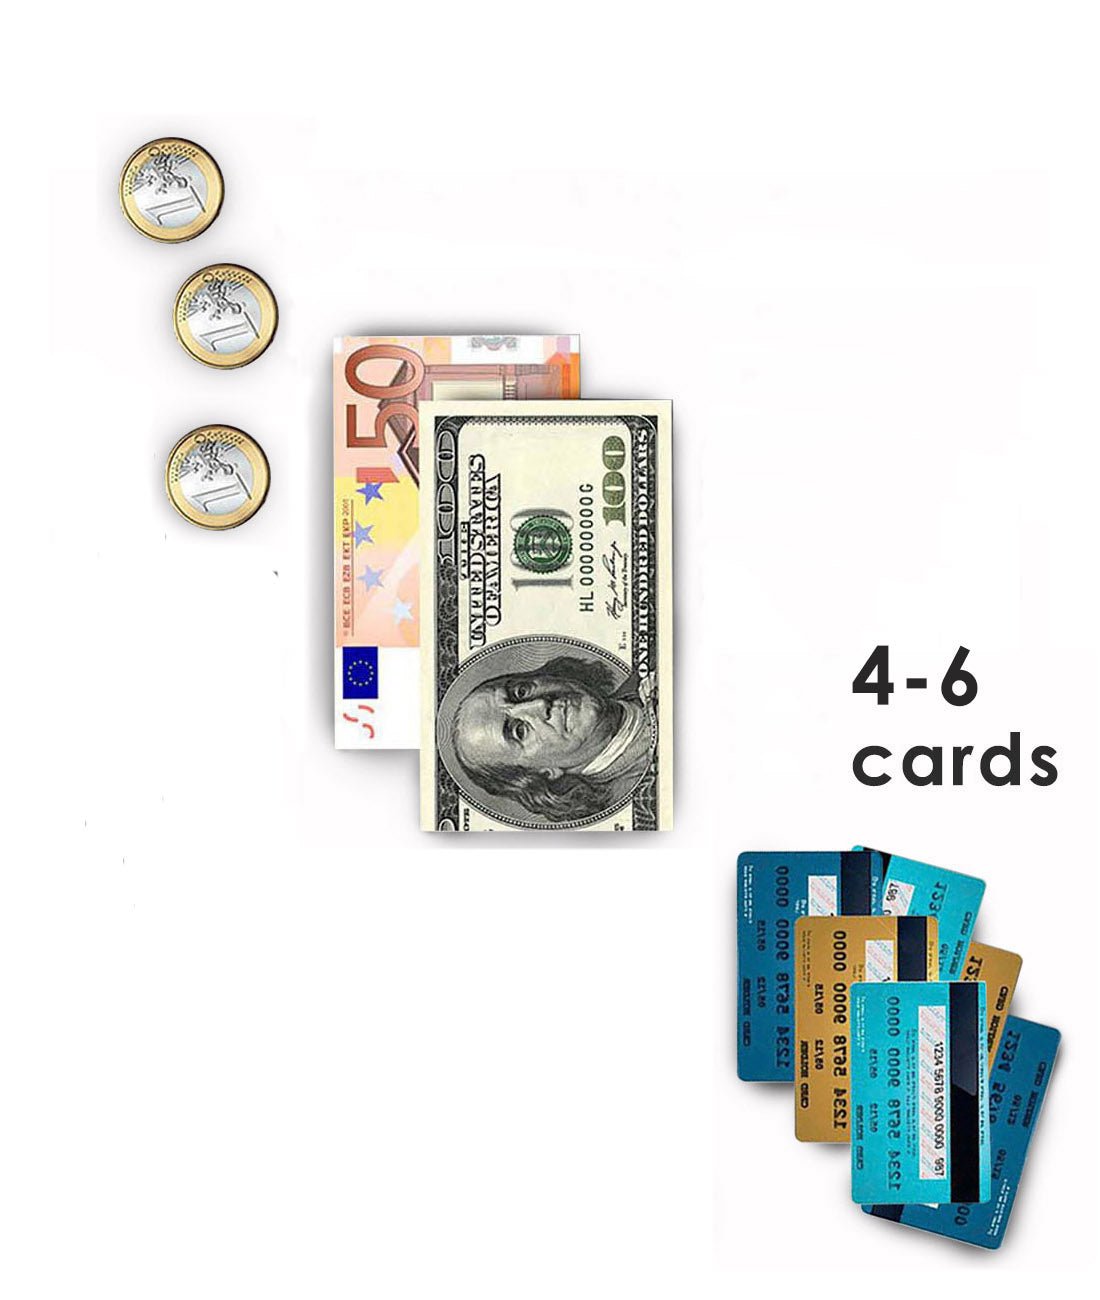 Wallet for Cards and Bills "SLIM WALLET" Croco Black color - MAKEY EU